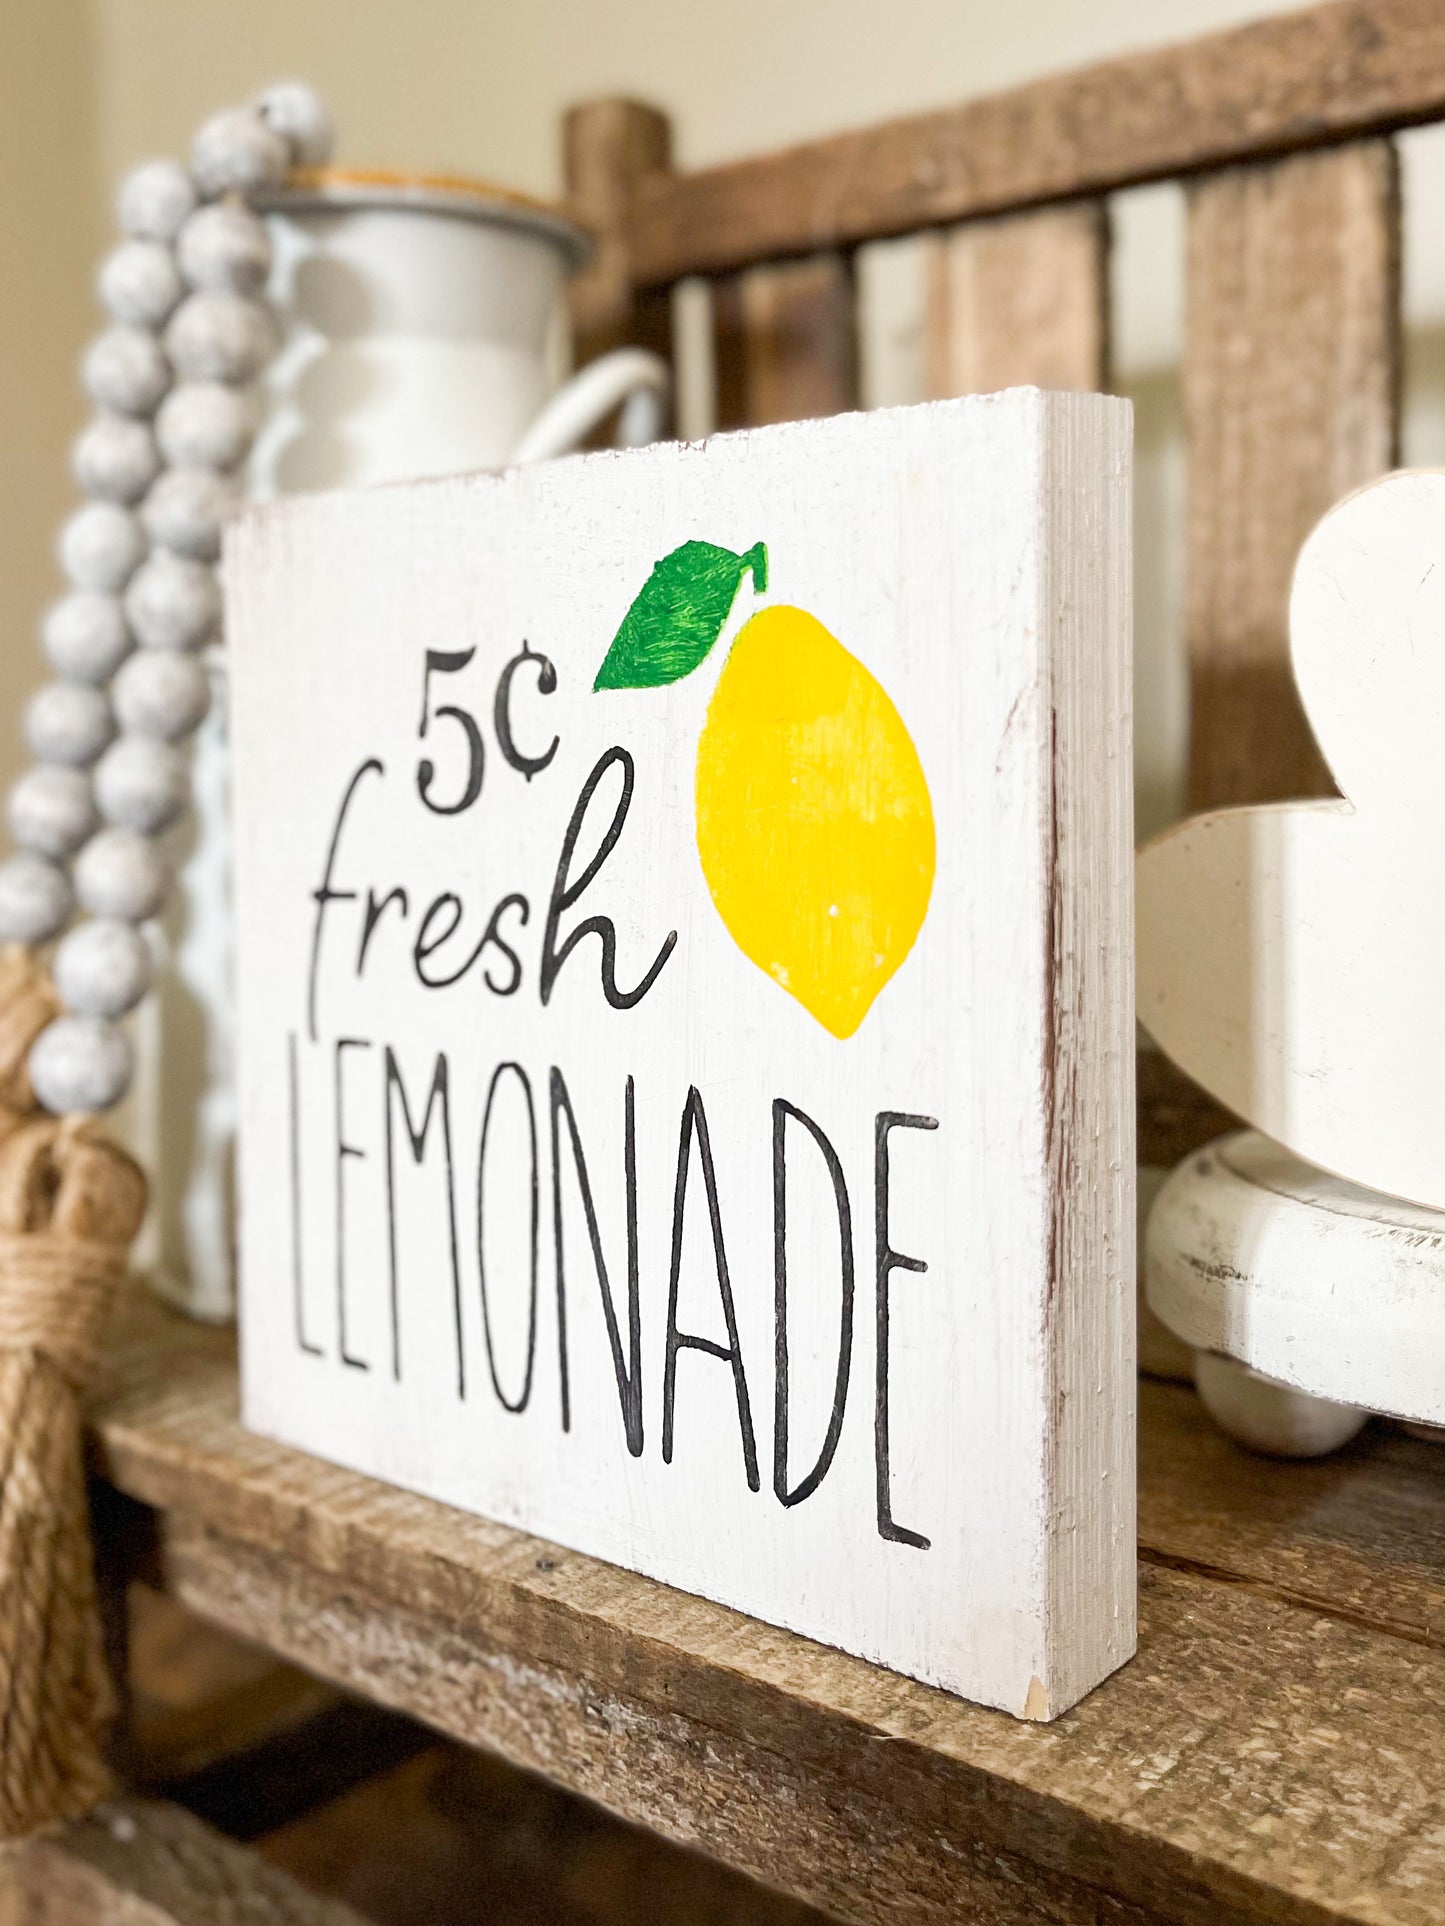 Fresh lemonade sign